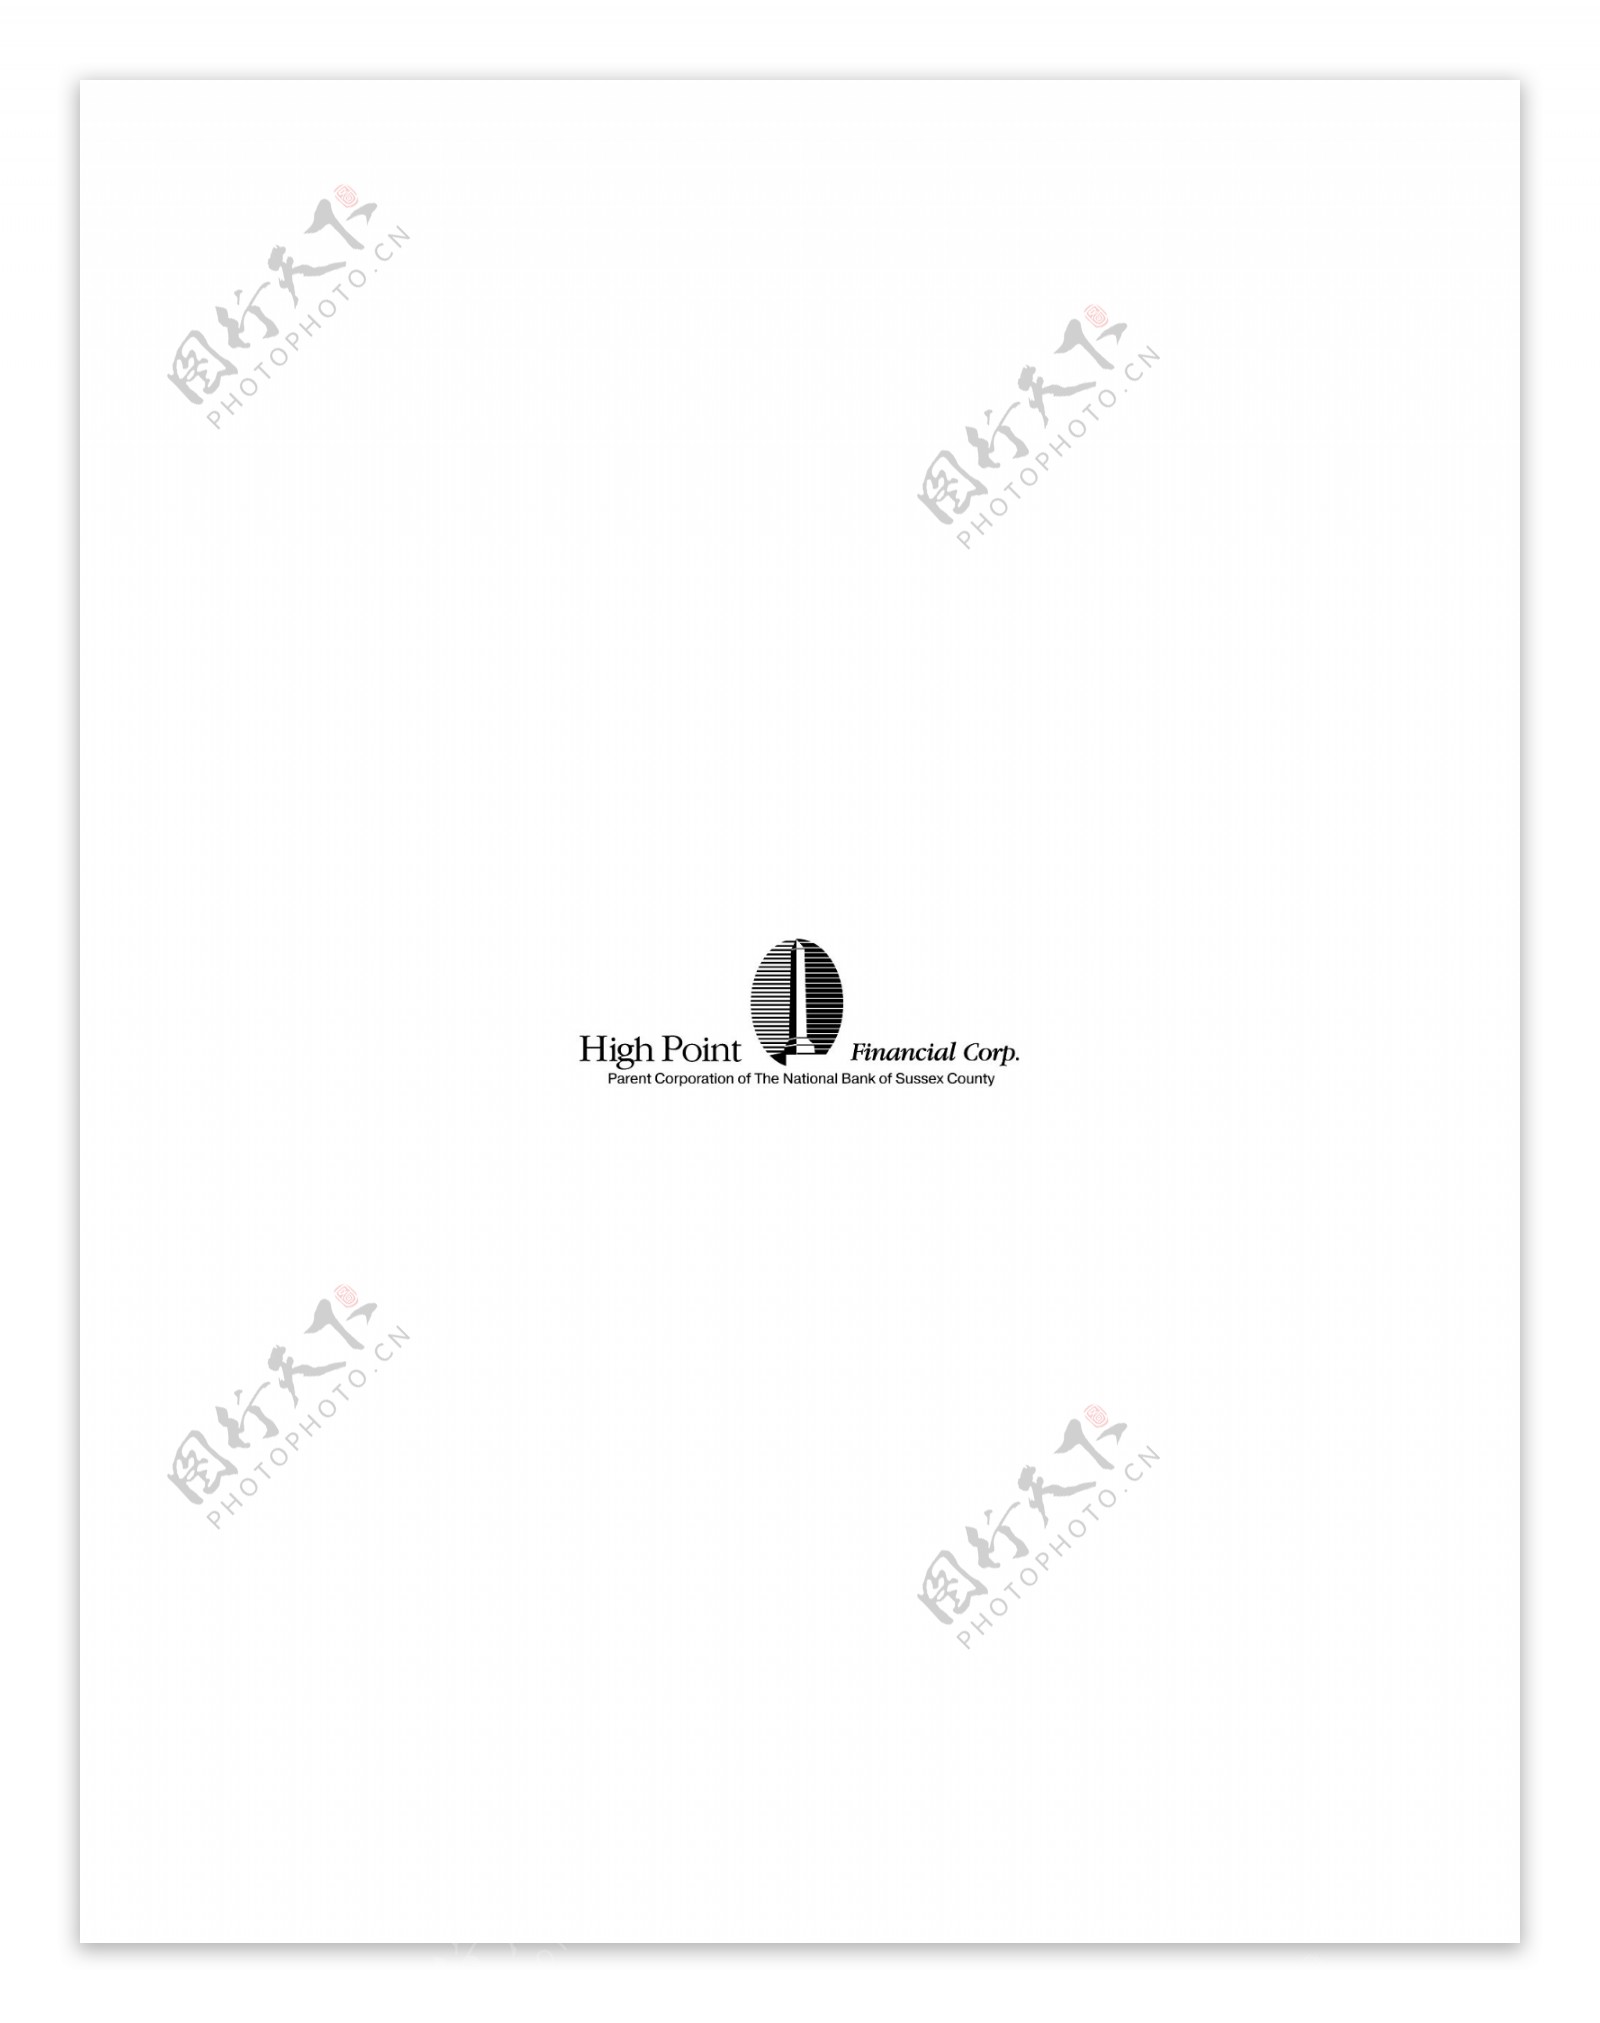 HighPointlogo设计欣赏IT企业标志HighPoint下载标志设计欣赏